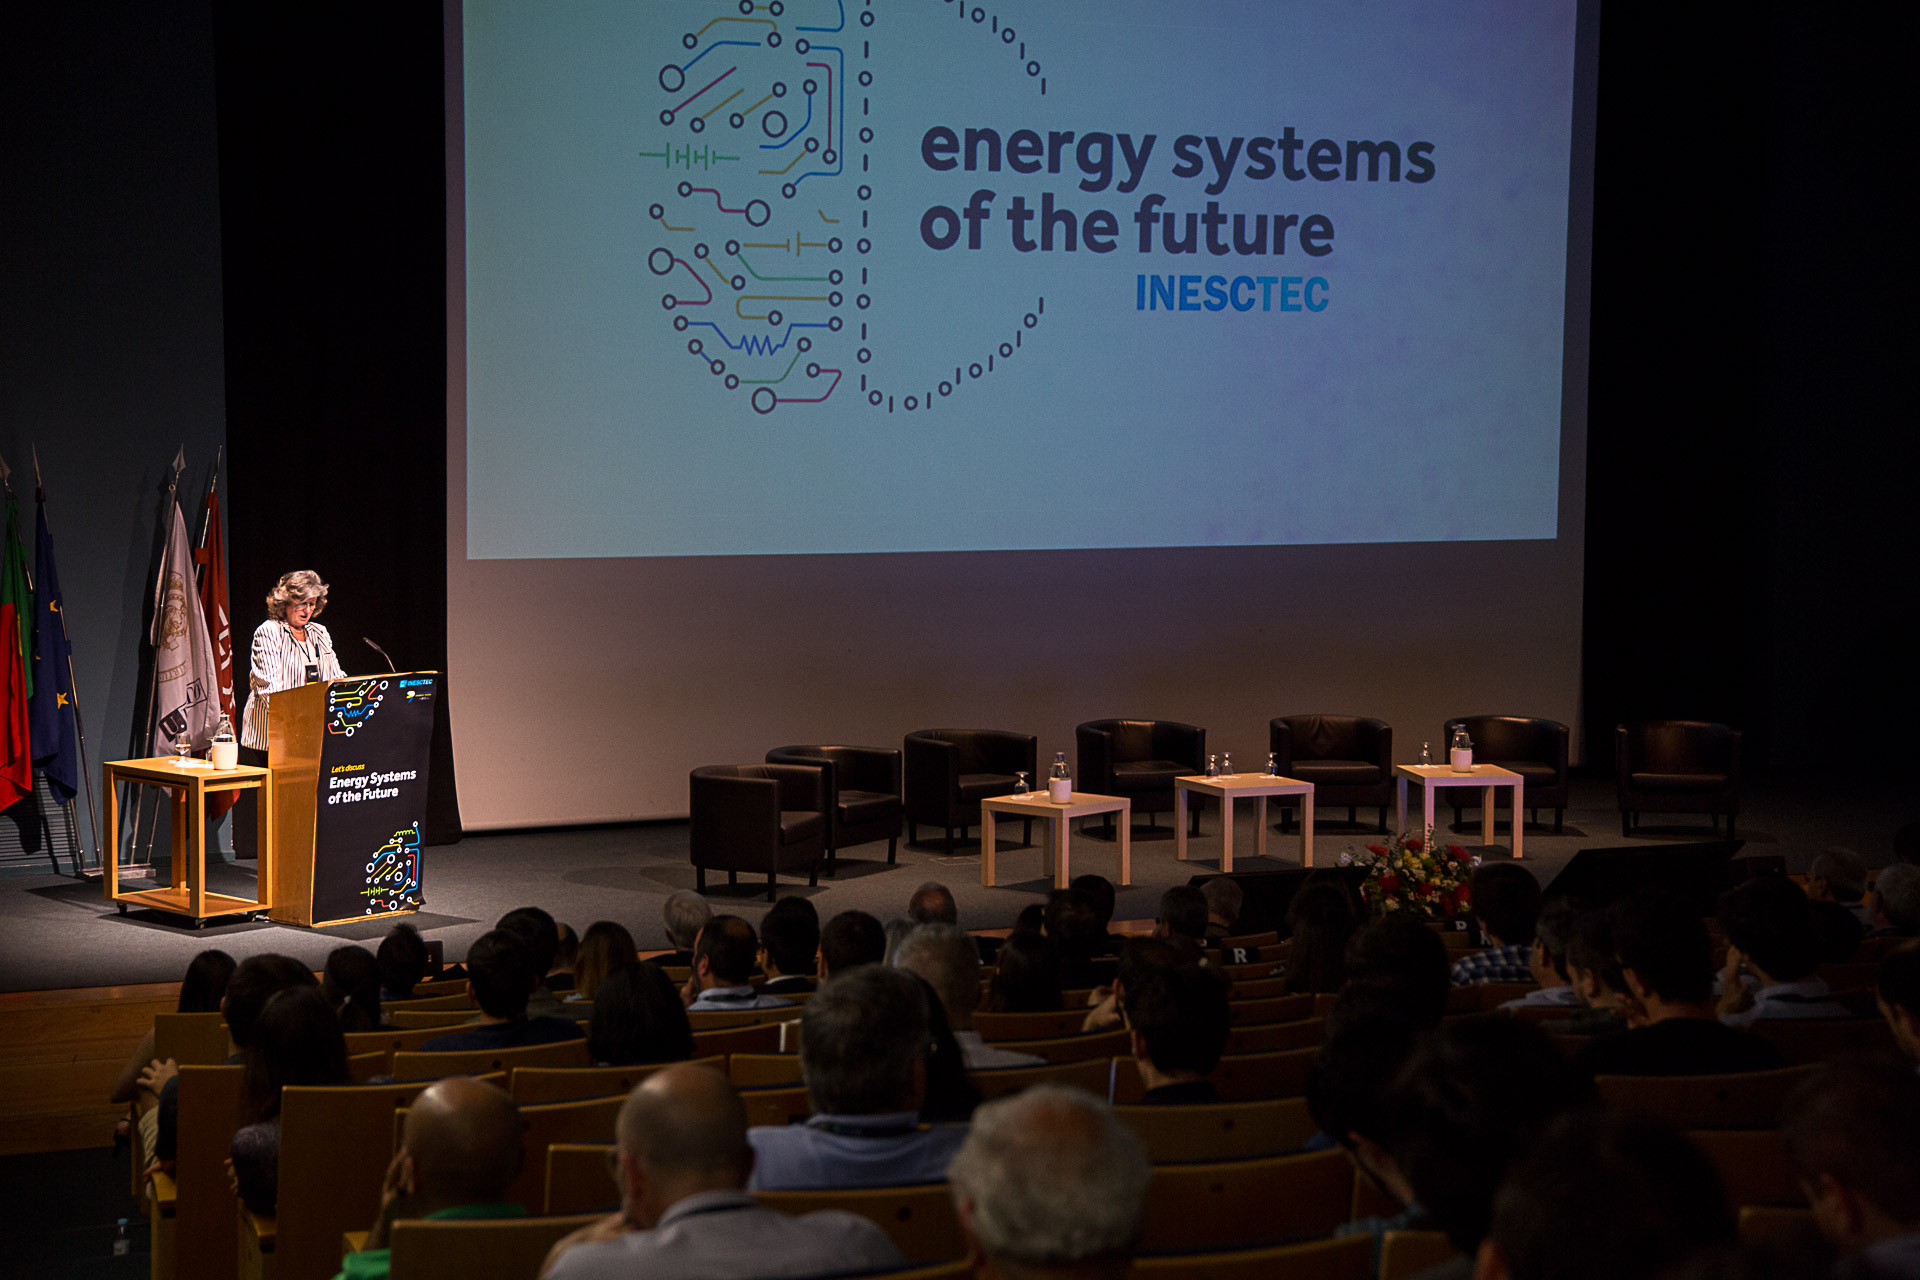 Dia da Energia foi celebrado com debate sobre os sistemas de energia do futuro